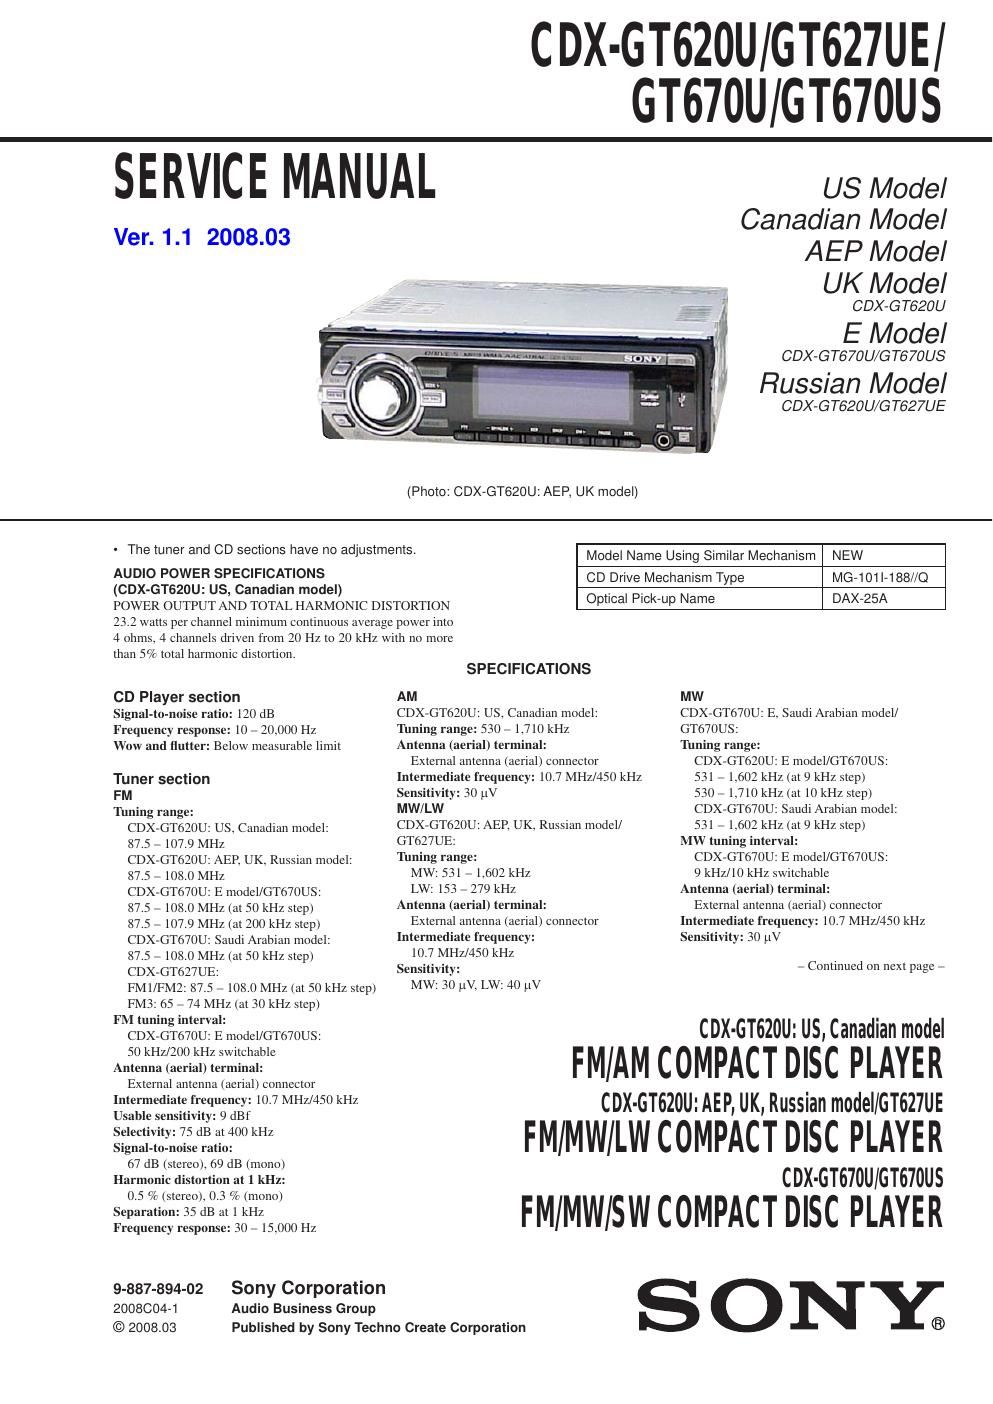 sony cdx gt 620 u service manual